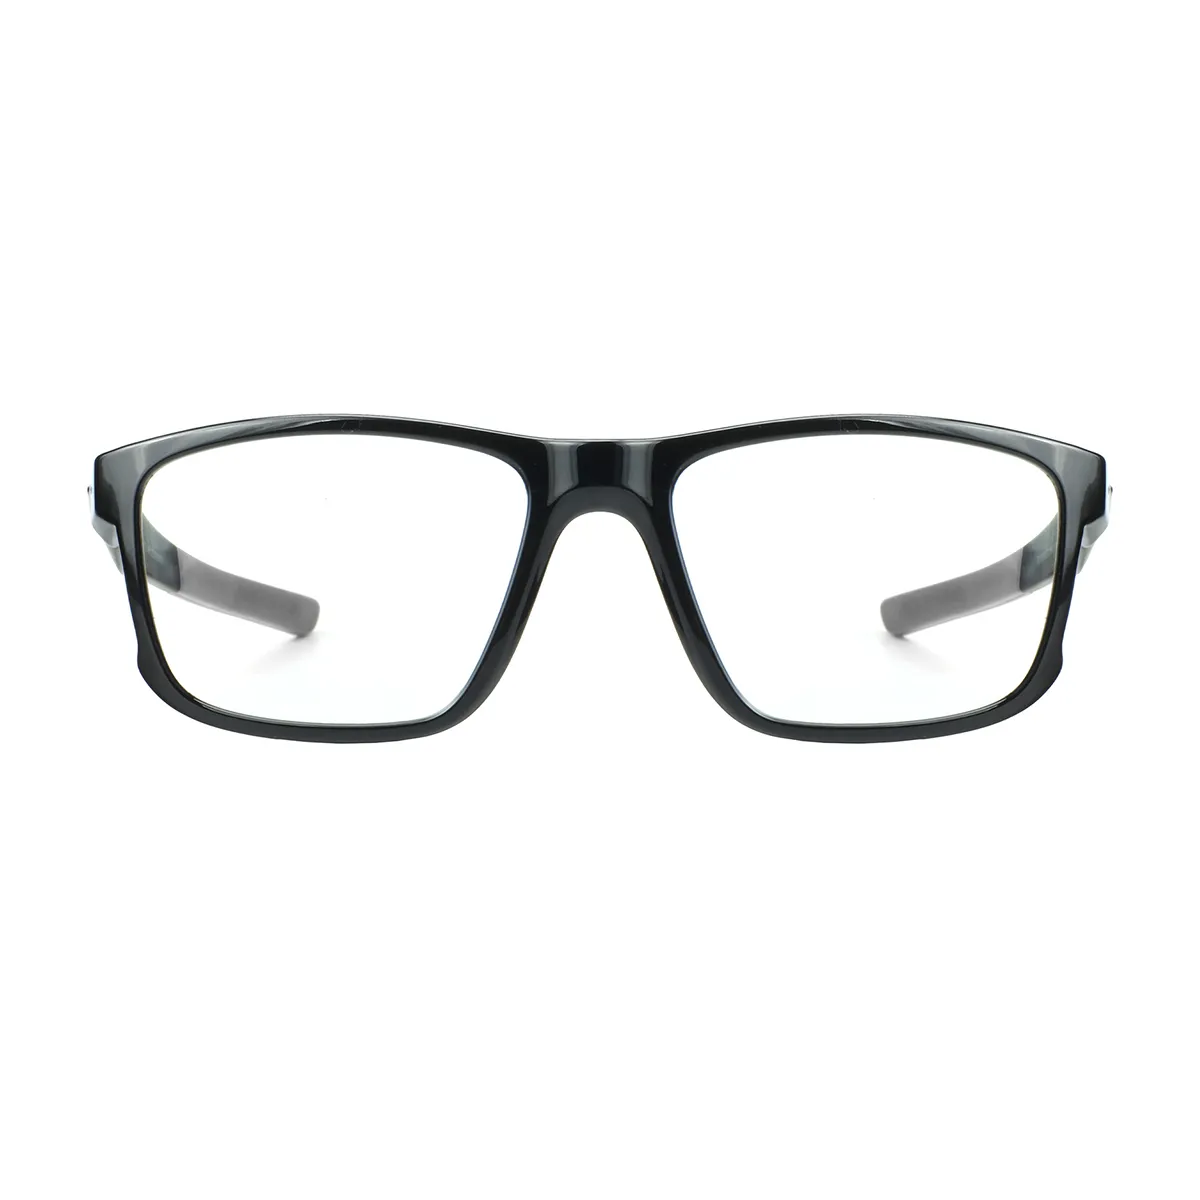 Darwin - Square Black-Gray Sports Glasses for Men - EFE